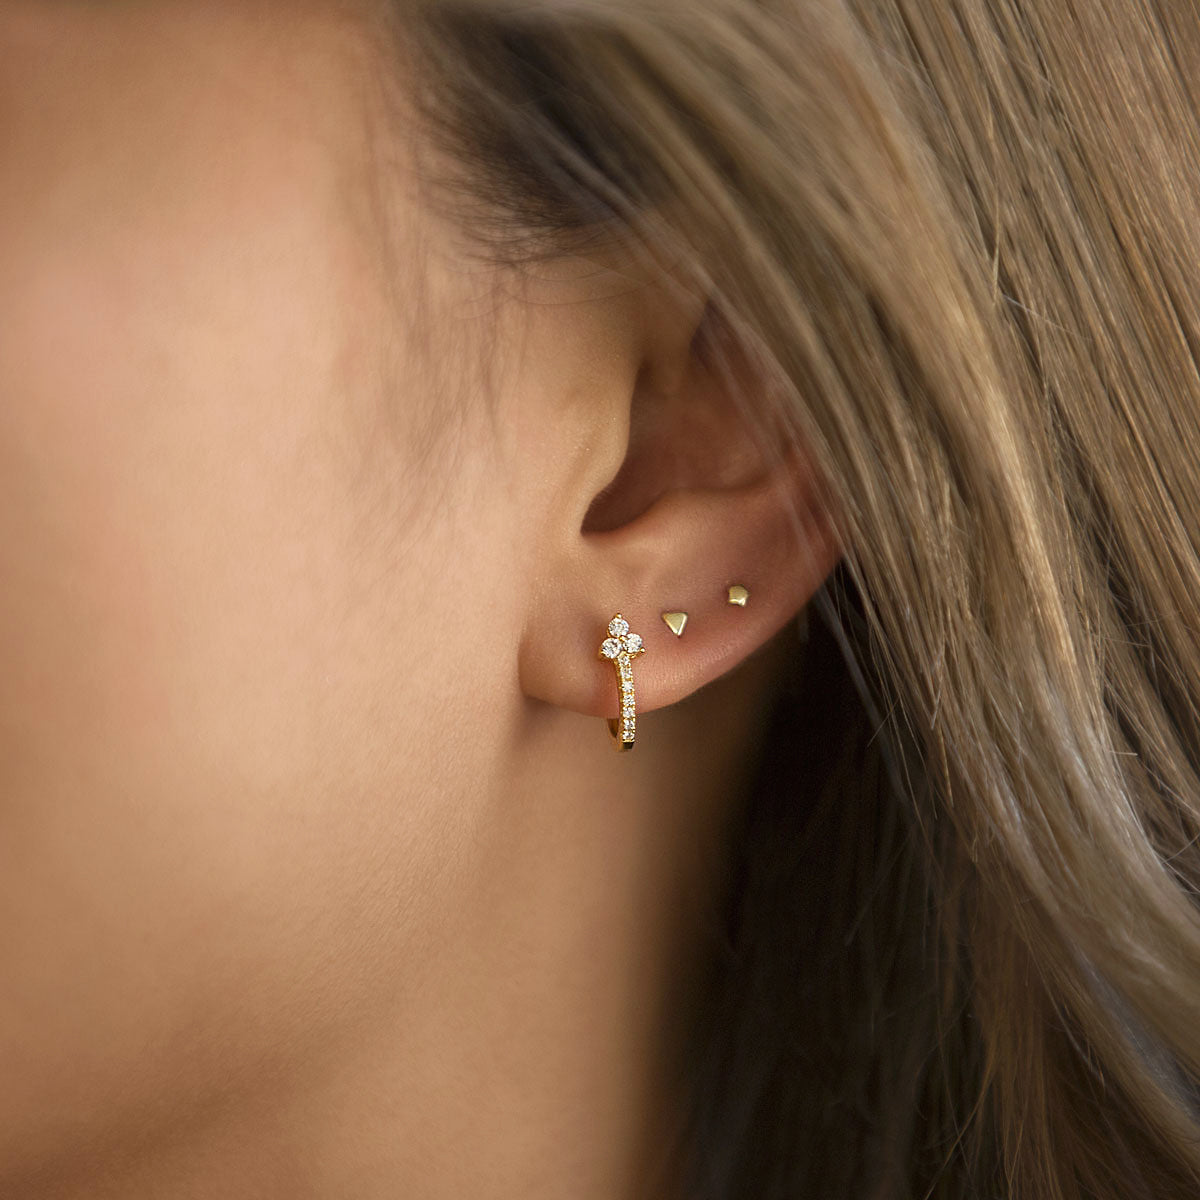 Tiny 14K Gold Stud Earrings, Single Earring, Cartilage Earrings AMY O